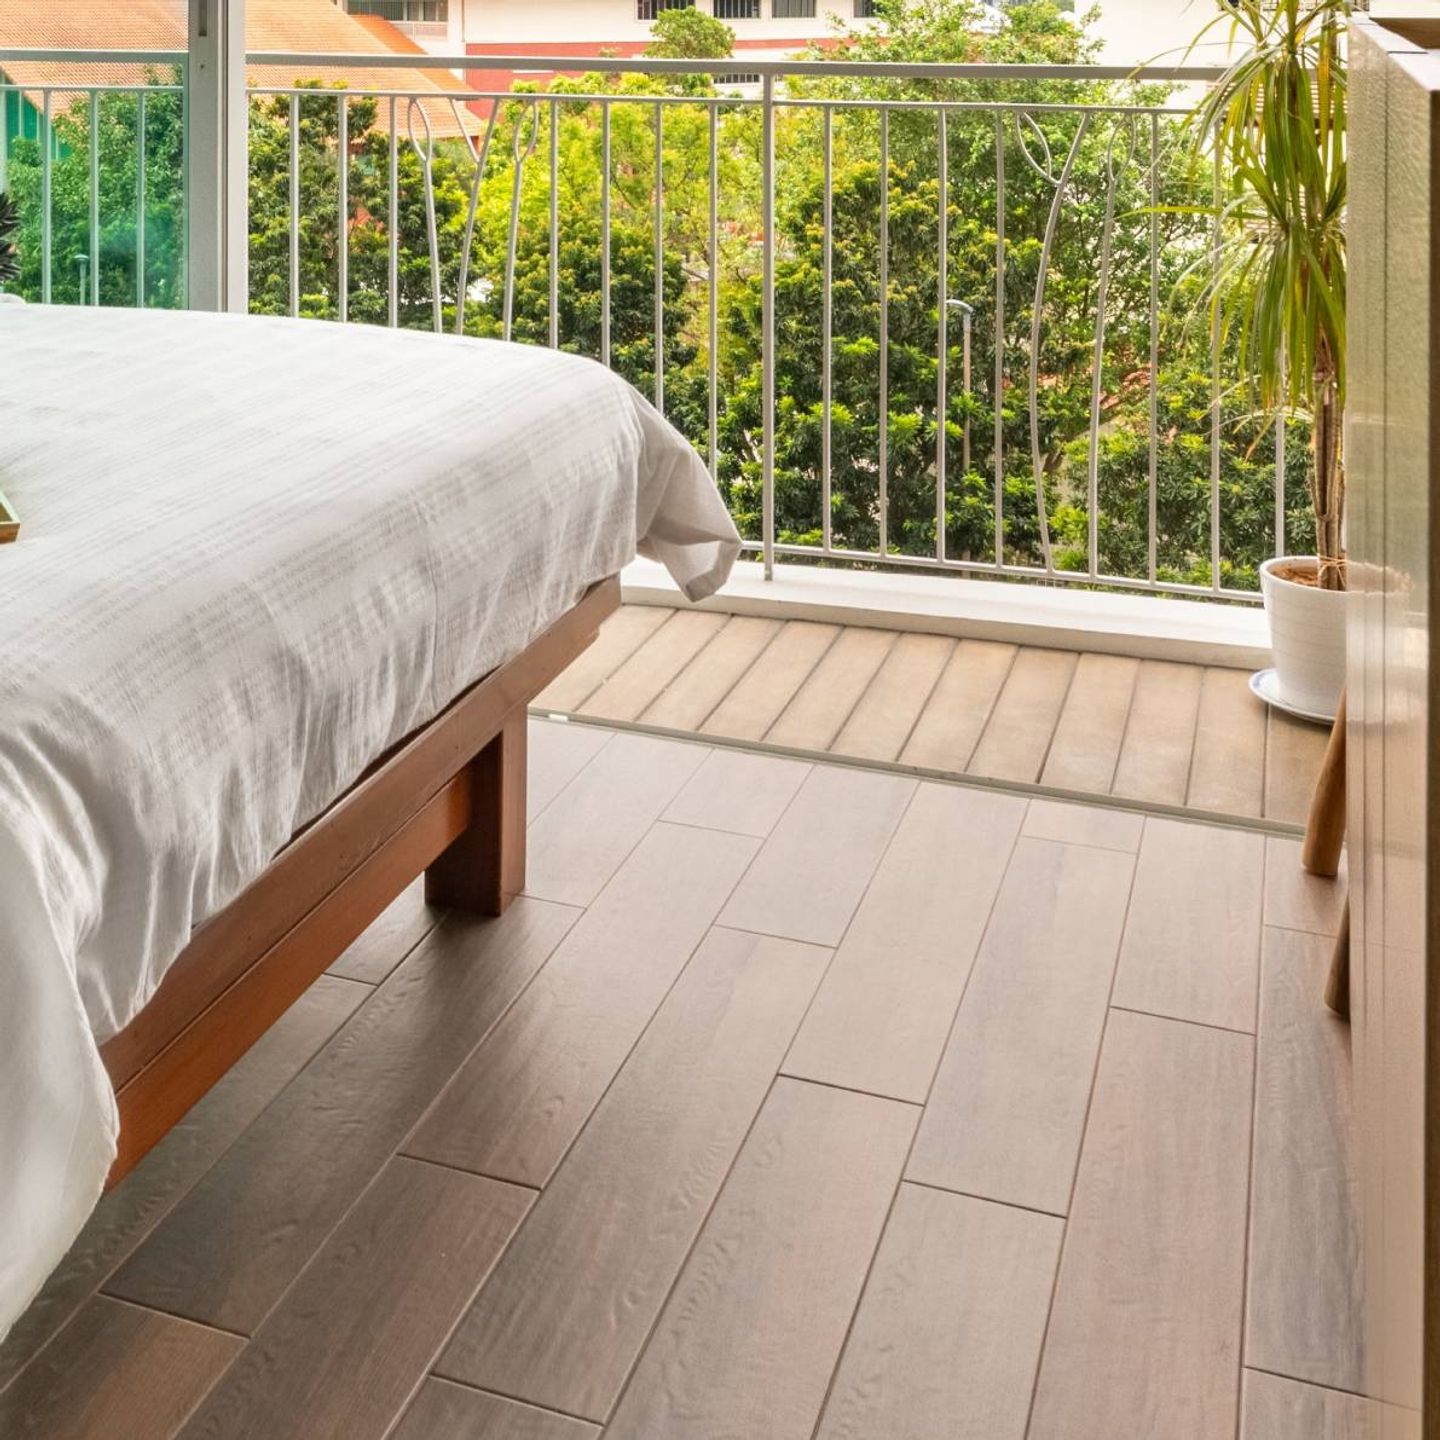 Brown Wooden Flooring Design For Bedrooms - Livspace